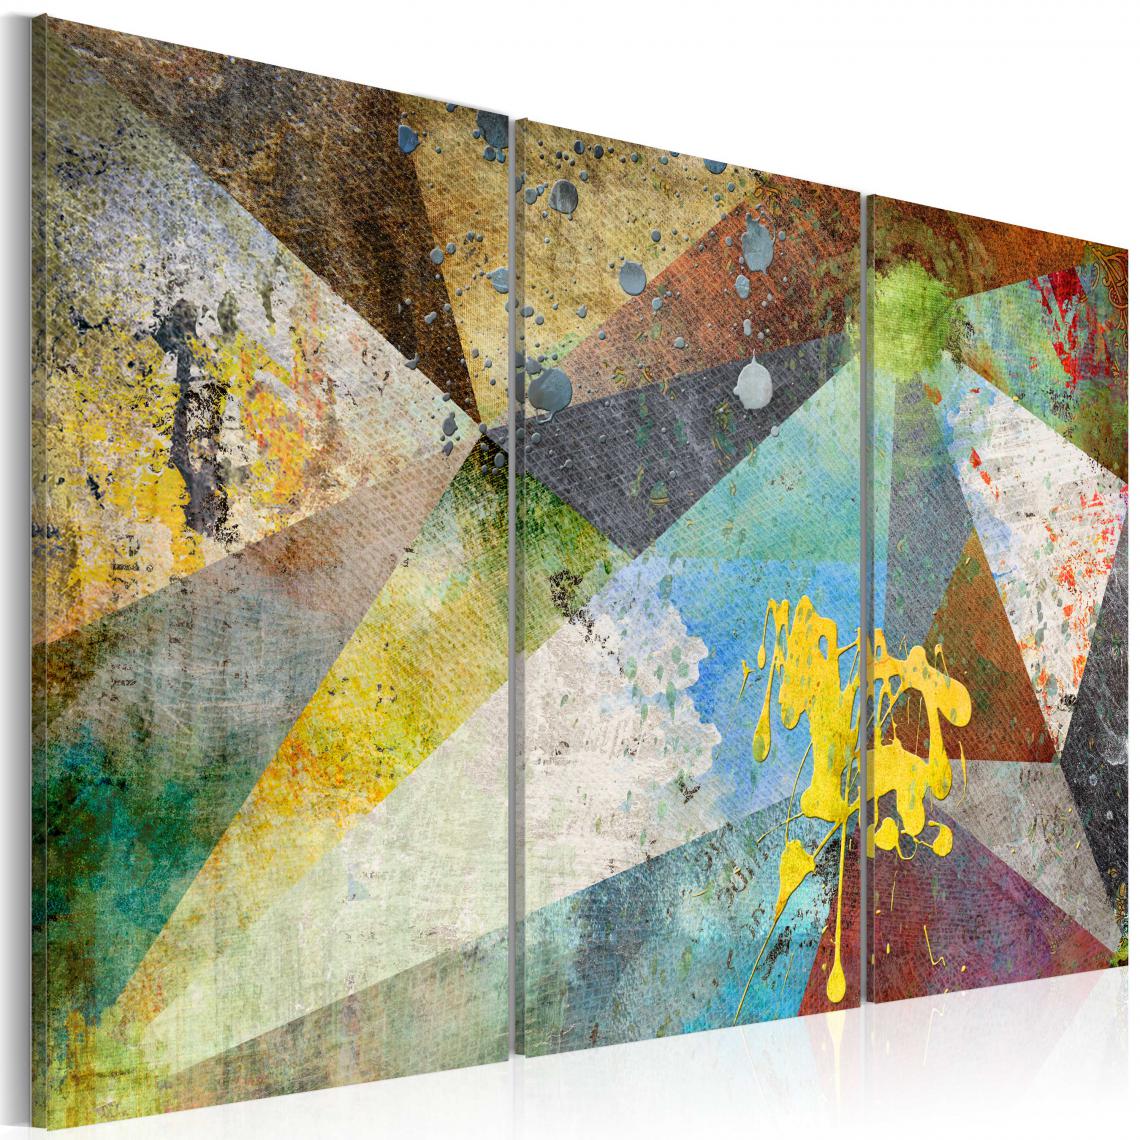 Decoshop26 - Tableau sur toile en 3 panneaux décoration murale image imprimée cadre en bois à suspendre À travers le prisme des couleurs 120x80 cm 11_0001732 - Tableaux, peintures